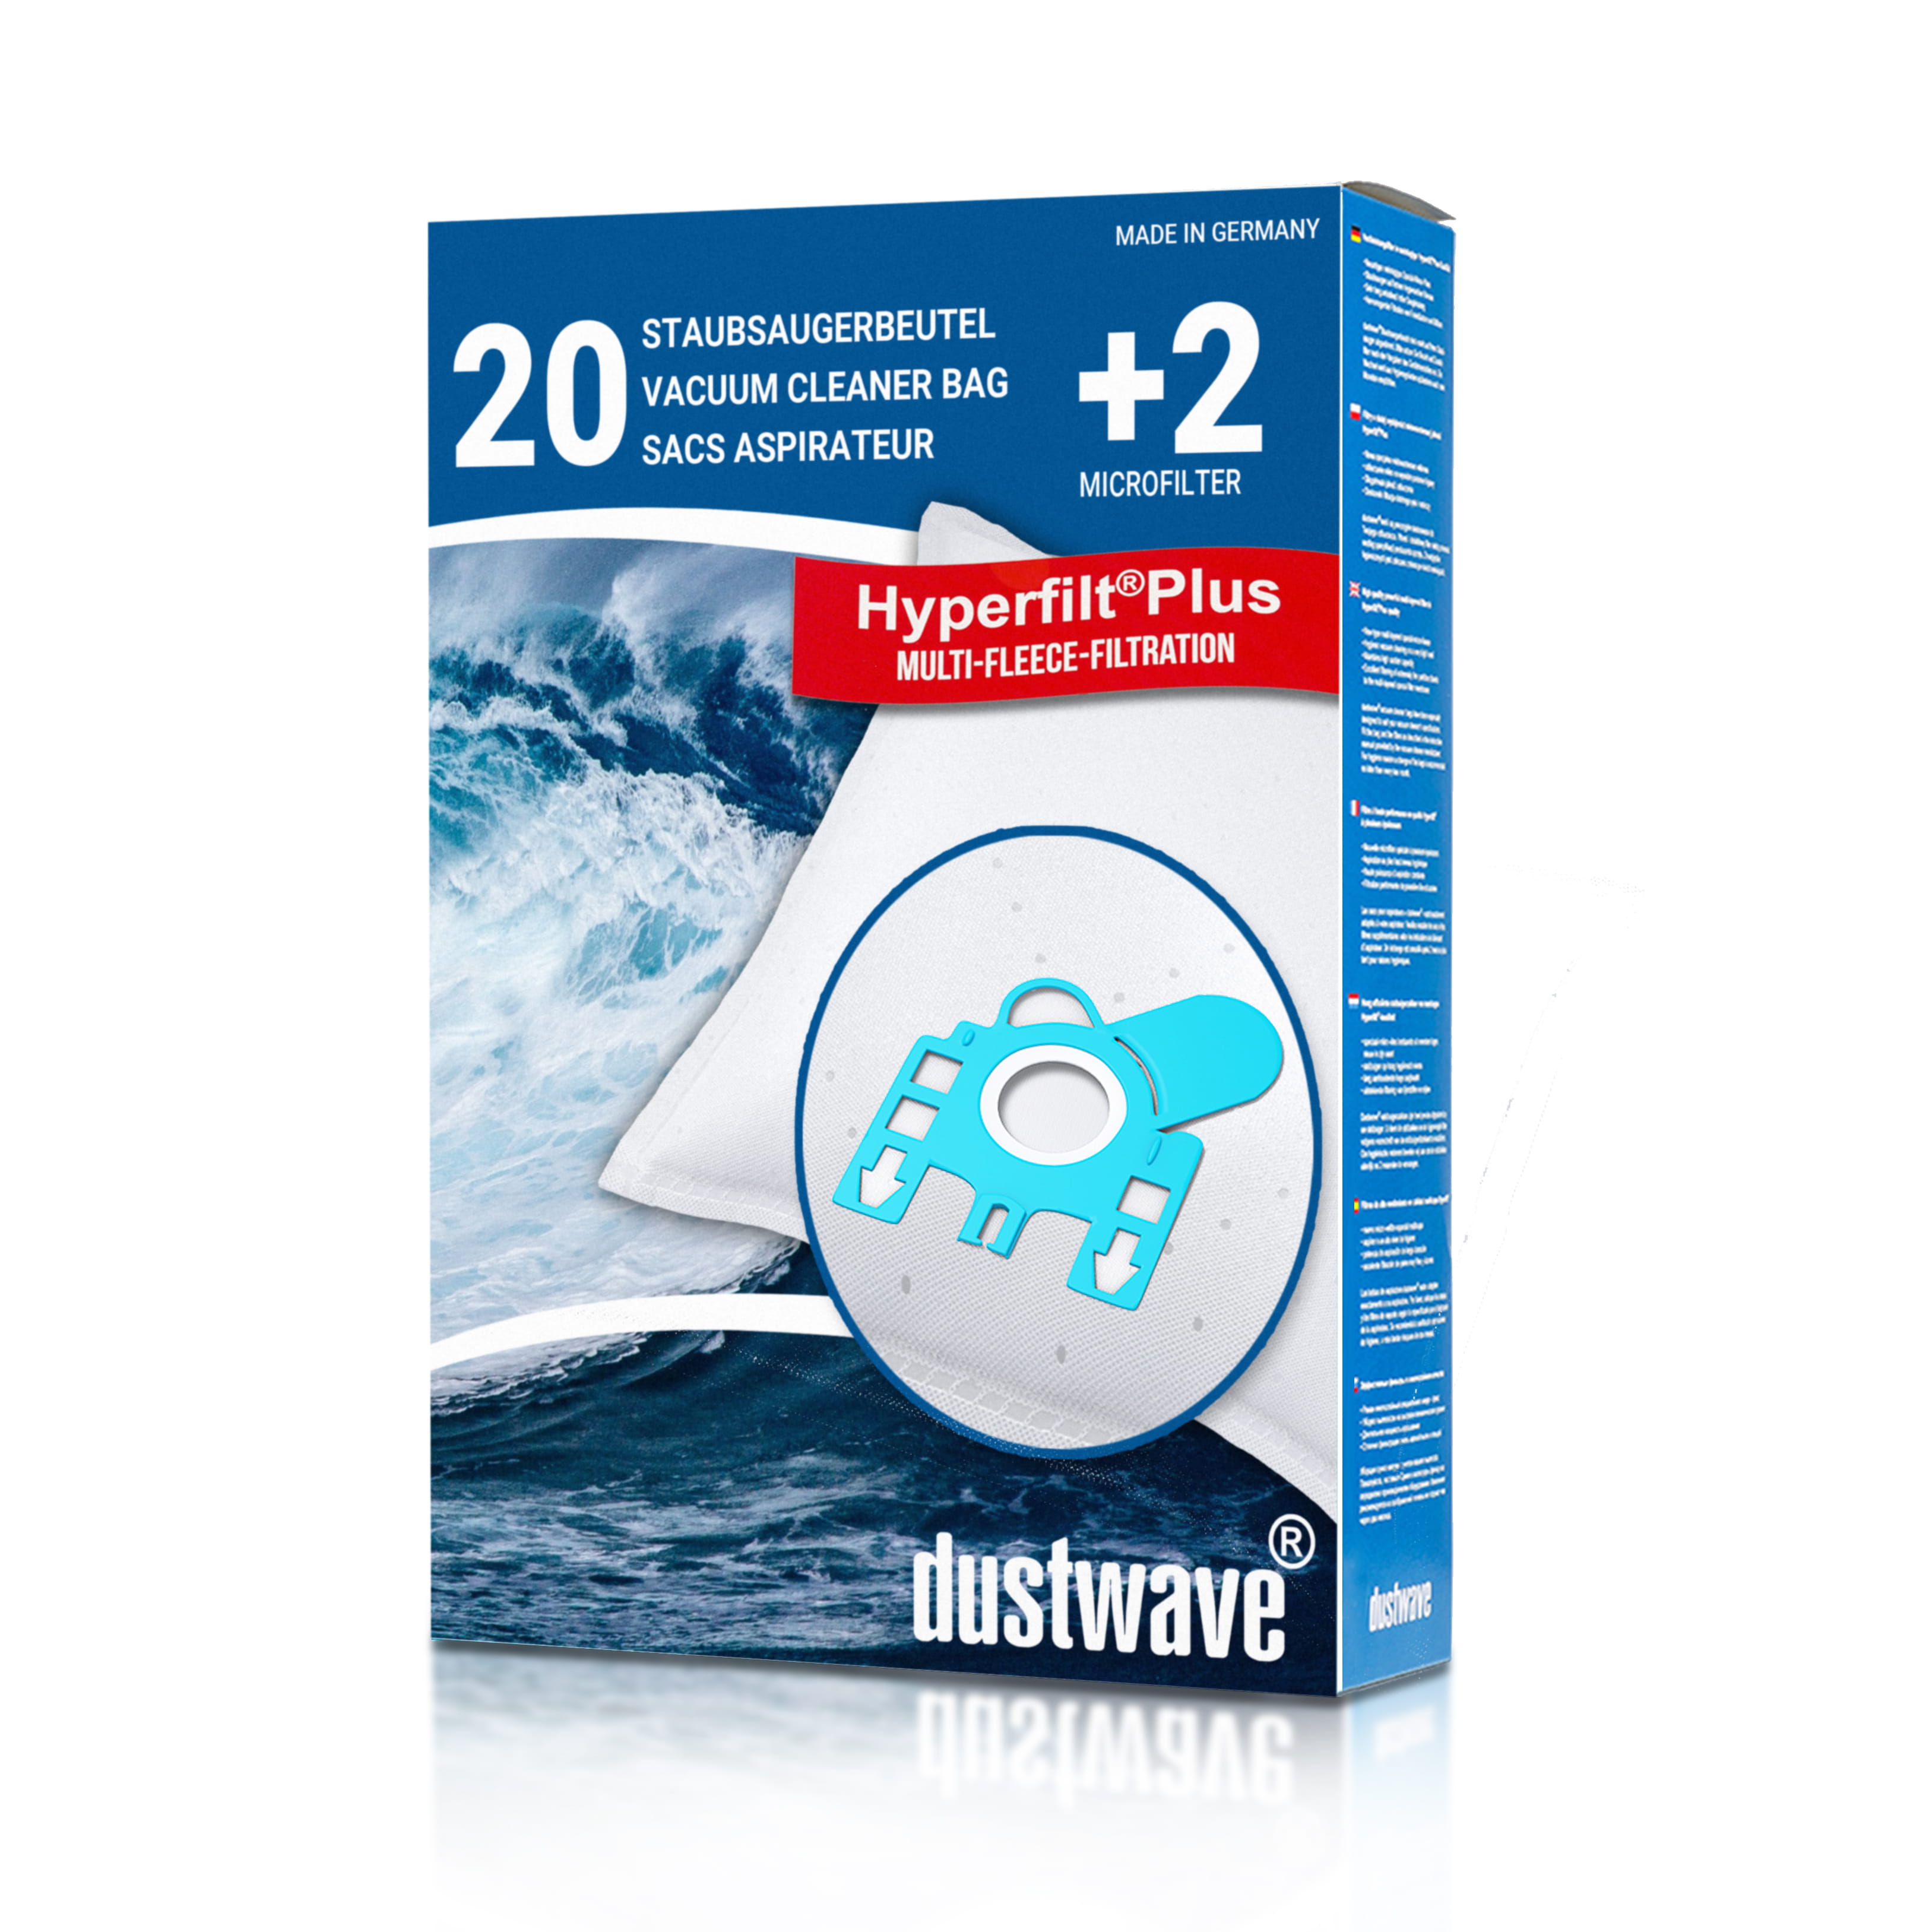 Dustwave® 20 Staubsaugerbeutel für Hoover AR40220 / TRAR40220 - hocheffizient, mehrlagiges Mikrovlies mit Hygieneverschluss - Made in Germany